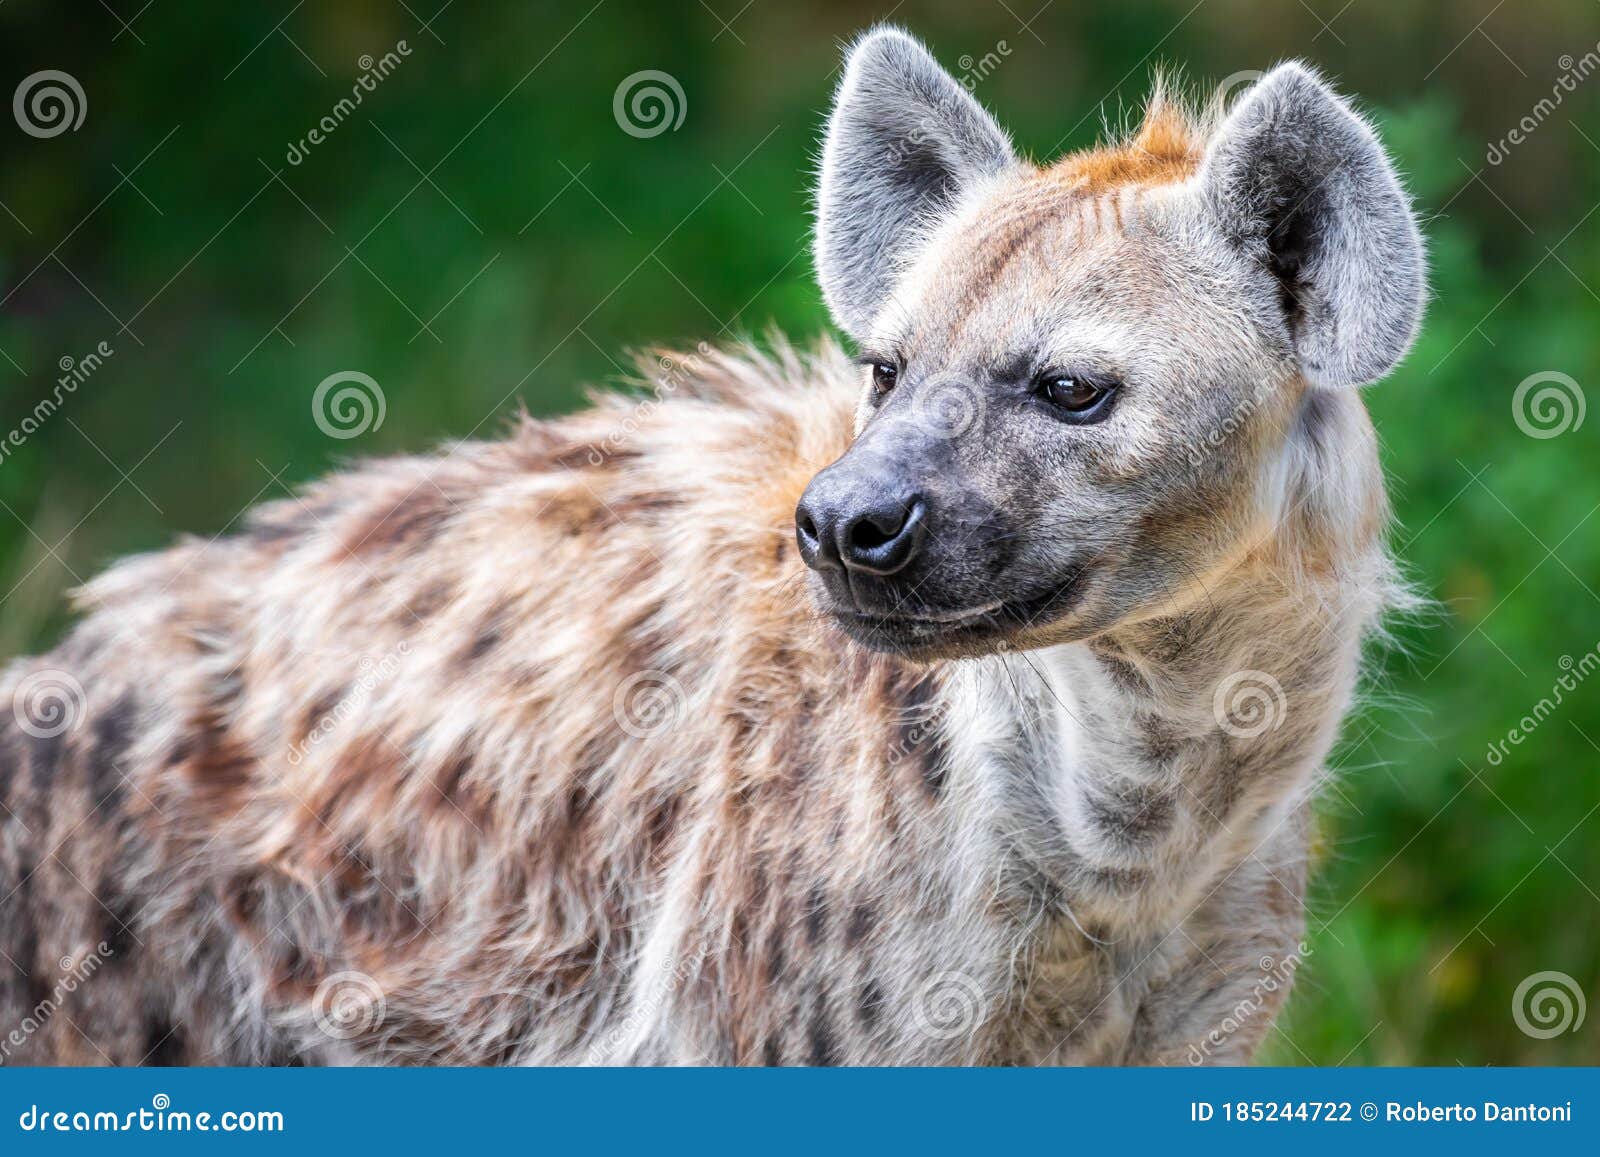 a hyena among foliage looking sideways